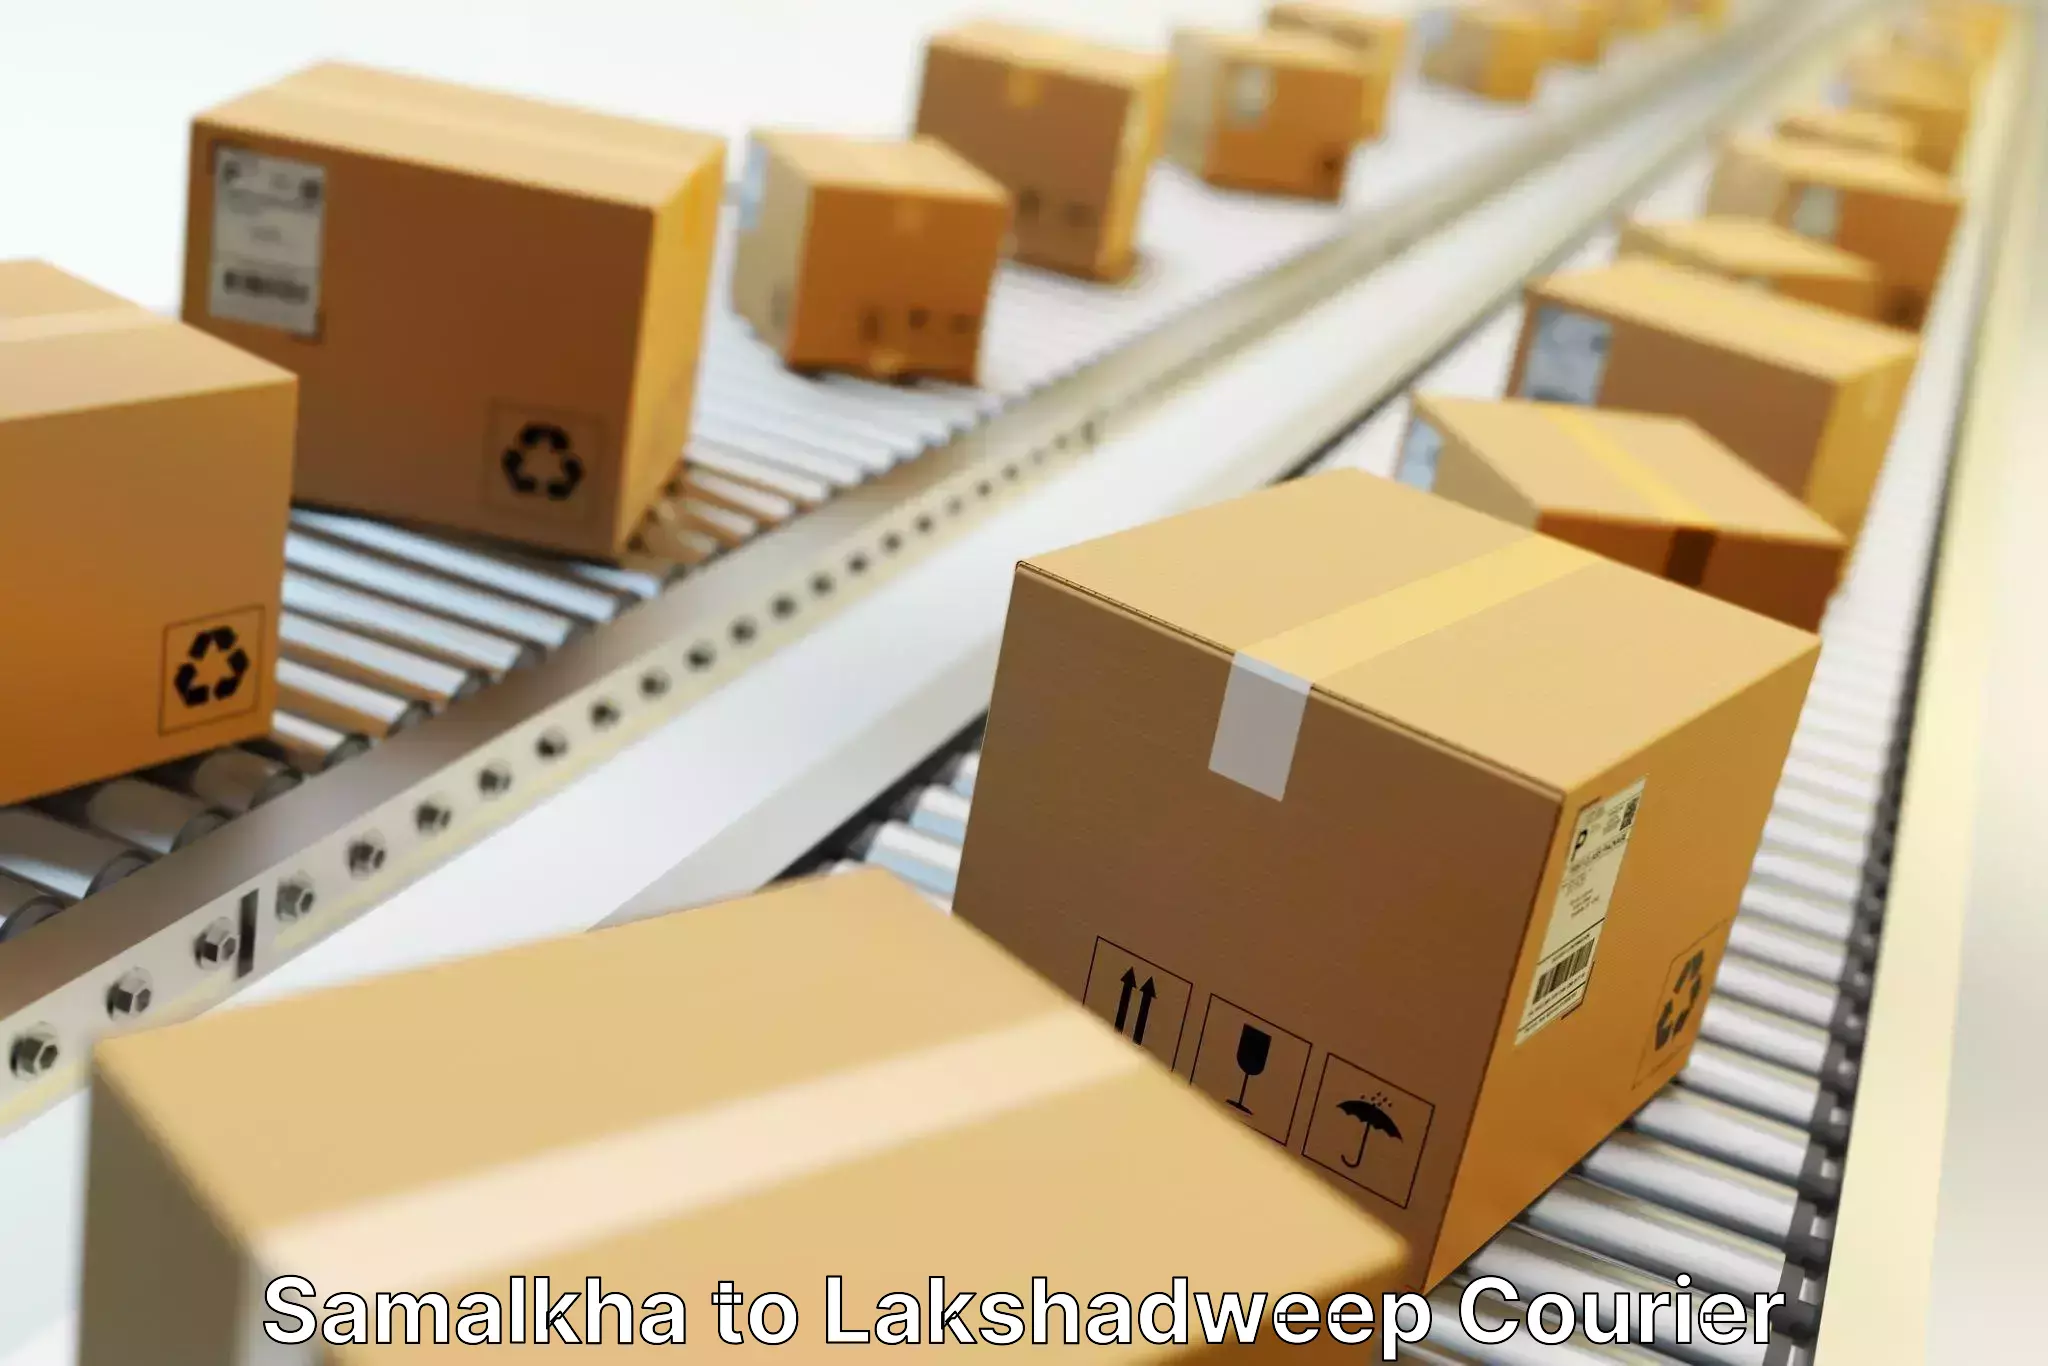 Global shipping solutions Samalkha to Lakshadweep